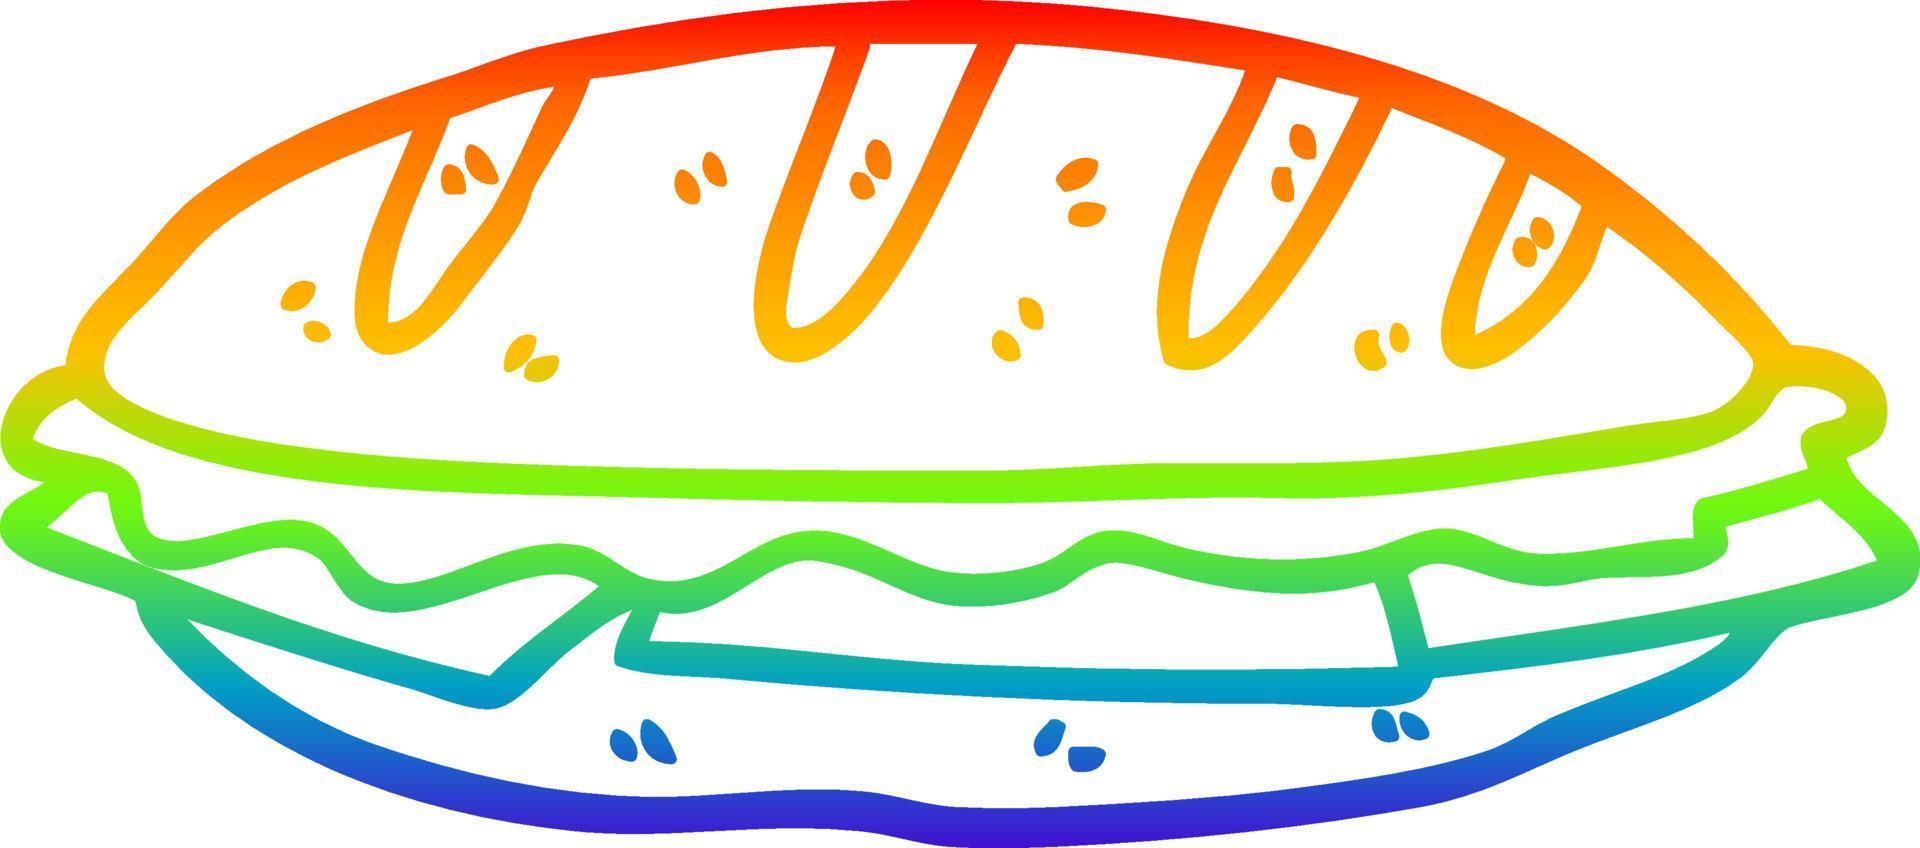 Regenbogen-Gradientenlinie, die Käsesandwich zeichnet vektor